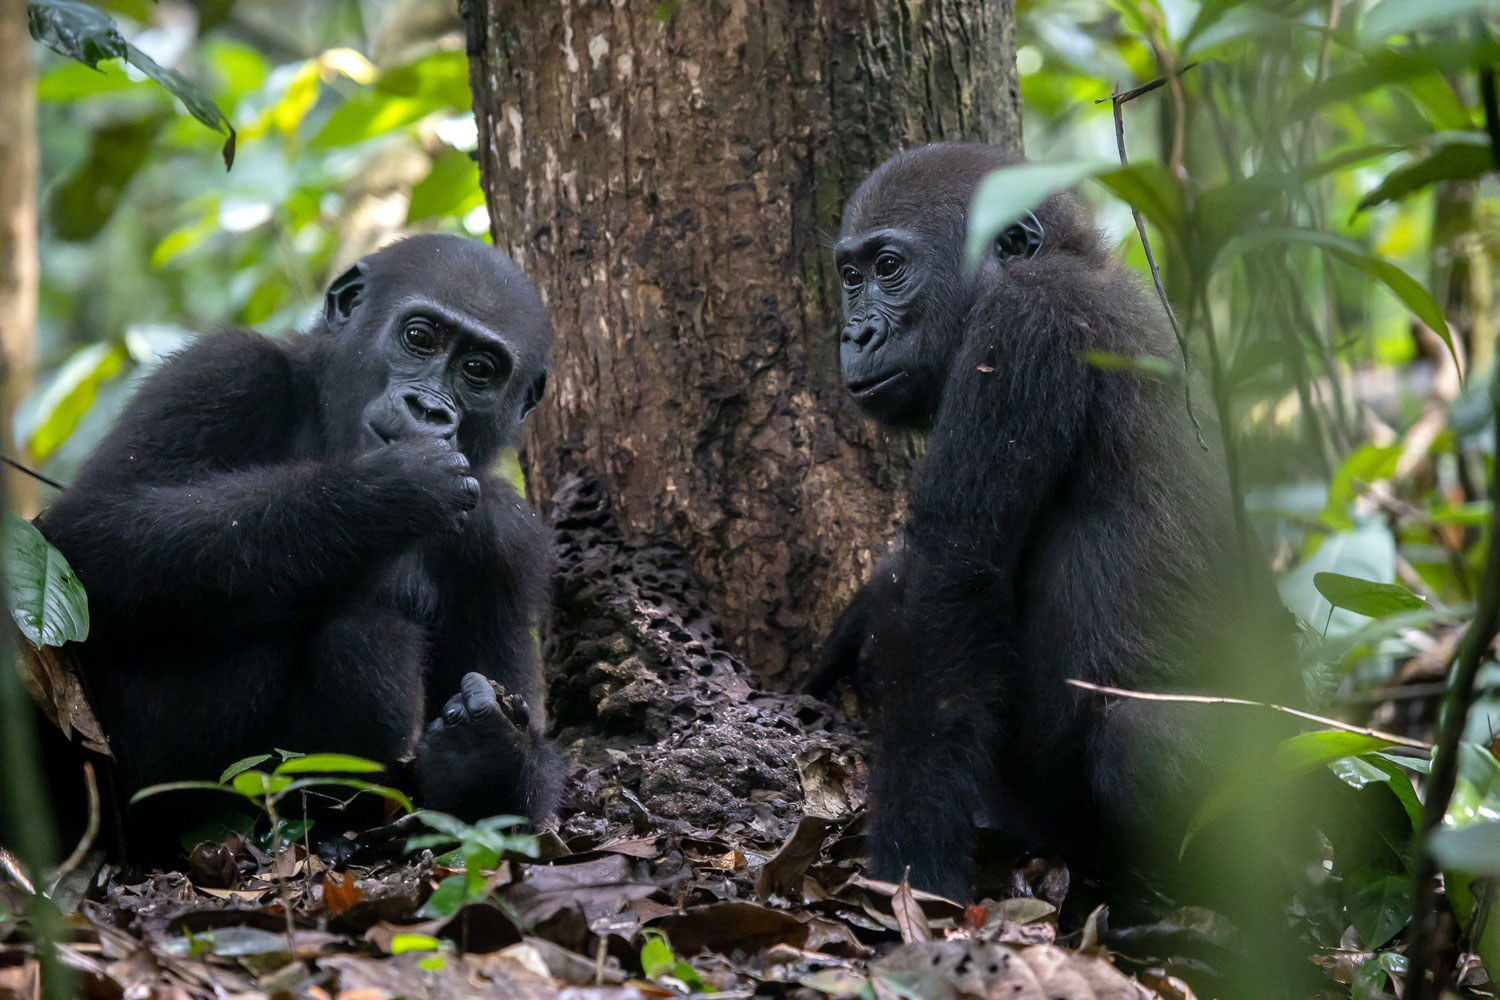 https://dzanga-sangha.org/wp-content/uploads/2019/06/gorillas.jpg